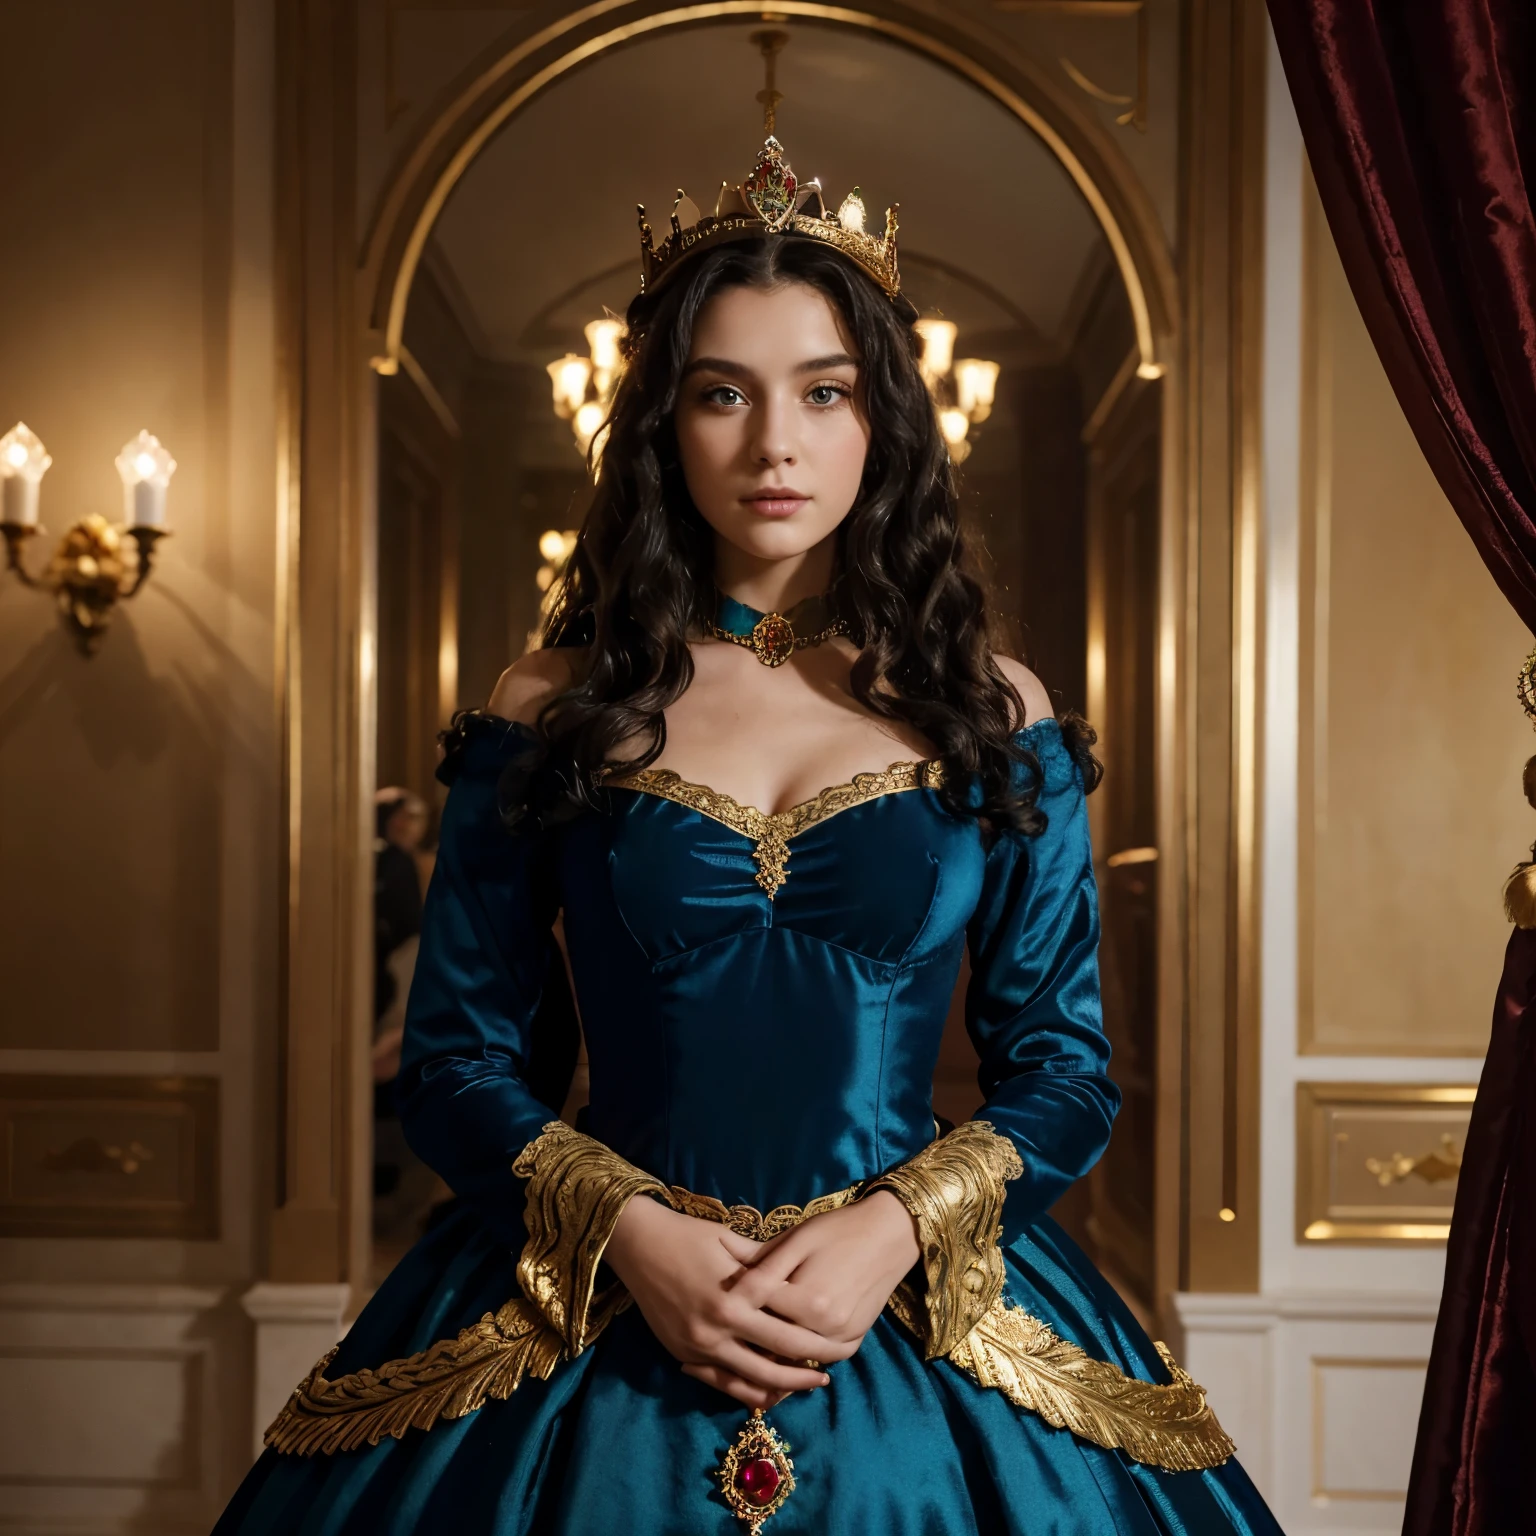 Eine 20-jährige Prinzessin mittleren Alters trägt eine goldene Krone mit Smaragden und Rubinen. schwarzes lockiges Haar, blaue Augen. In rote und blaue reiche Kleidung gekleidet. Halber Körper